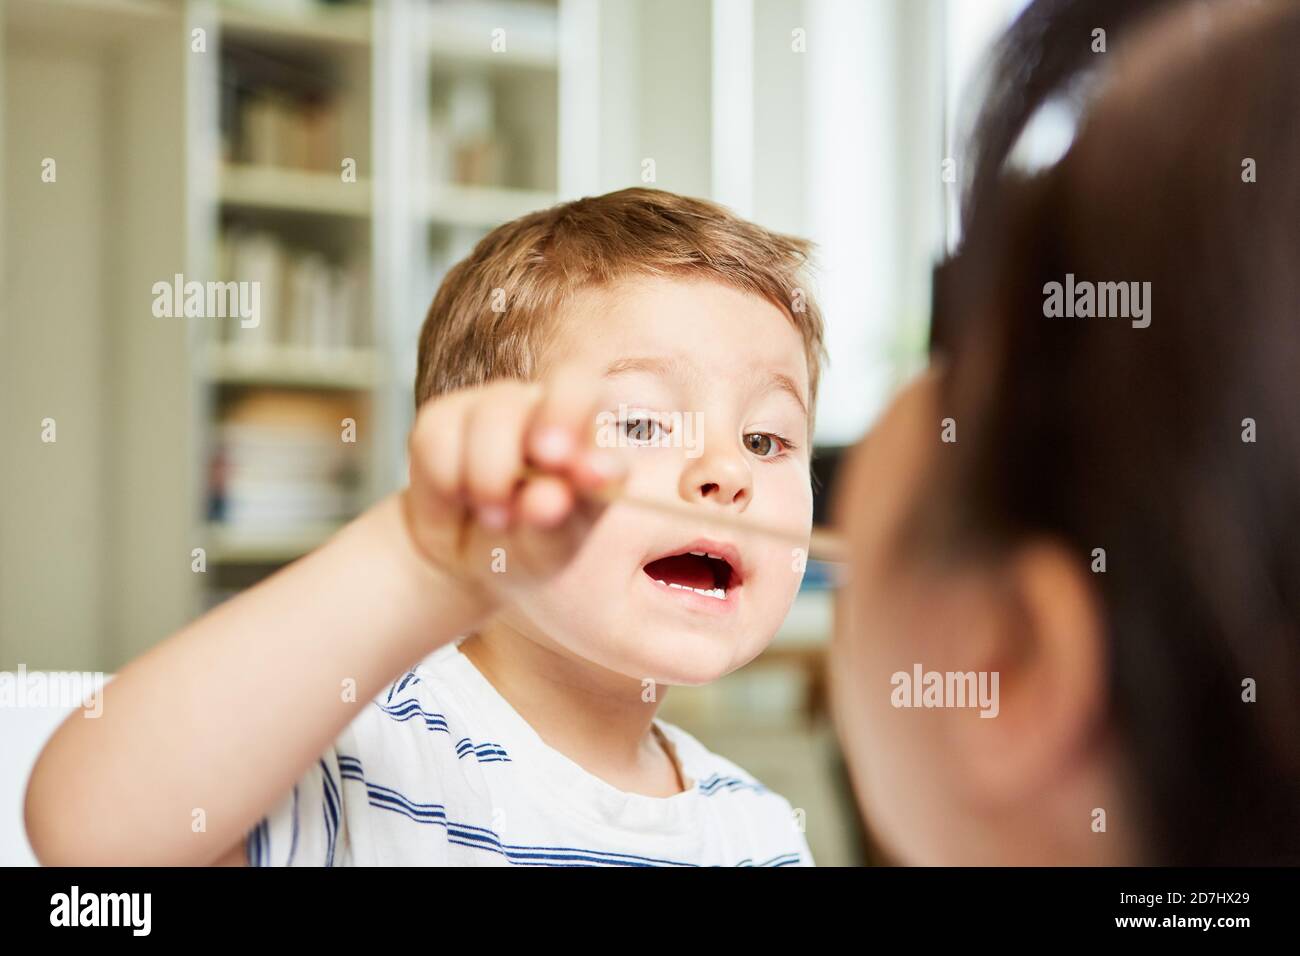 L'enfant joue avec la spatule lors de la consultation avec un pédiatre ou médecin de famille Banque D'Images